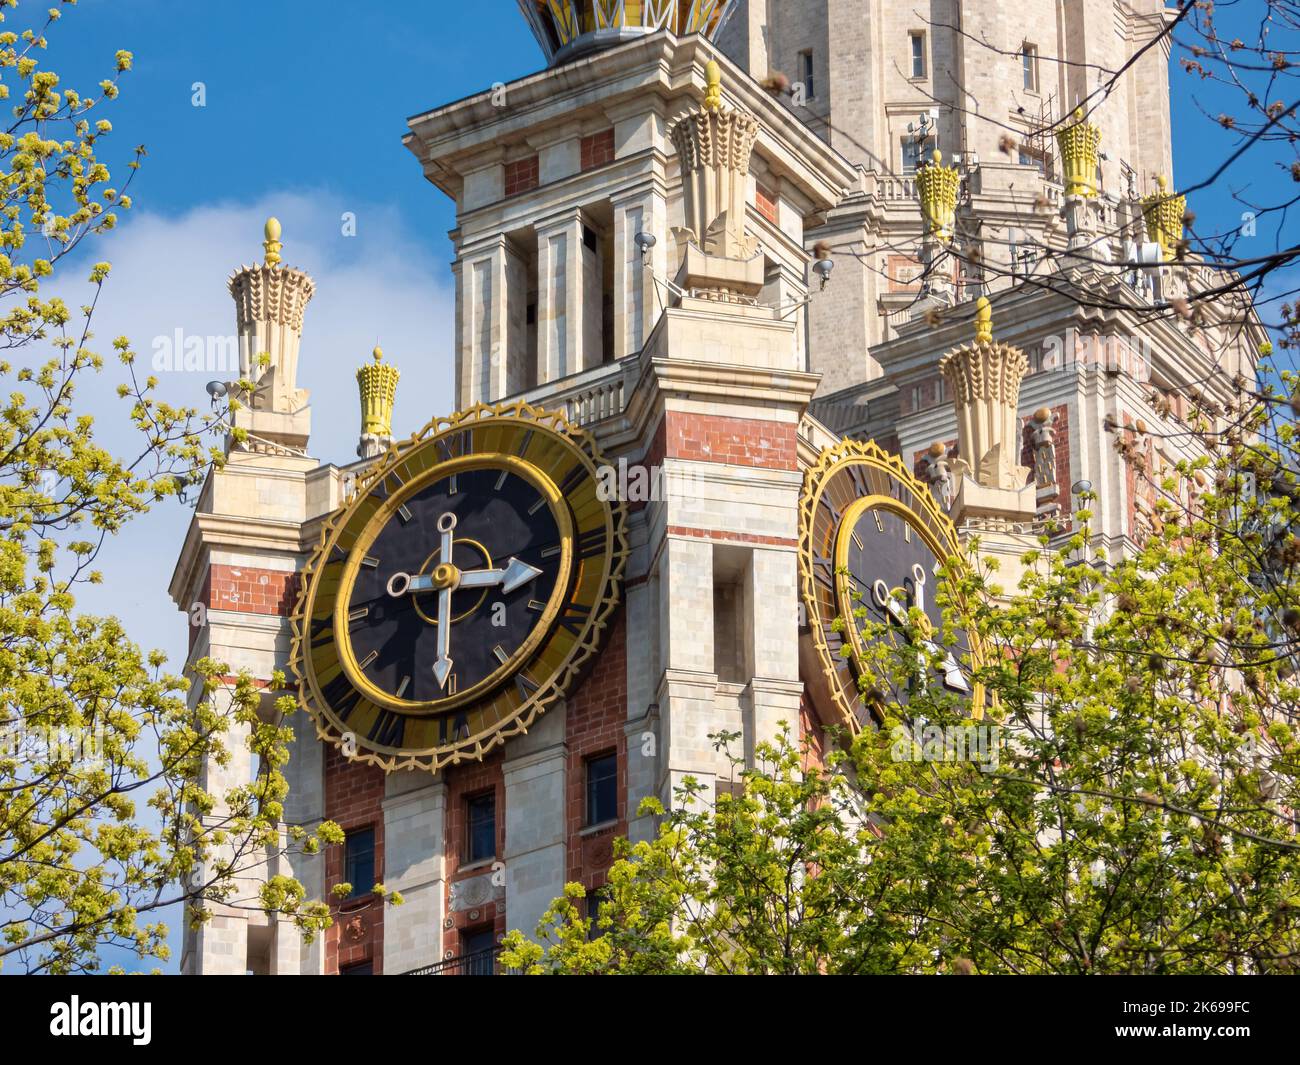 Moscú, Rusia - 1 de mayo de 2019: Reloj de la torre del edificio principal de la Universidad Estatal Lomonosov de Moscú Foto de stock